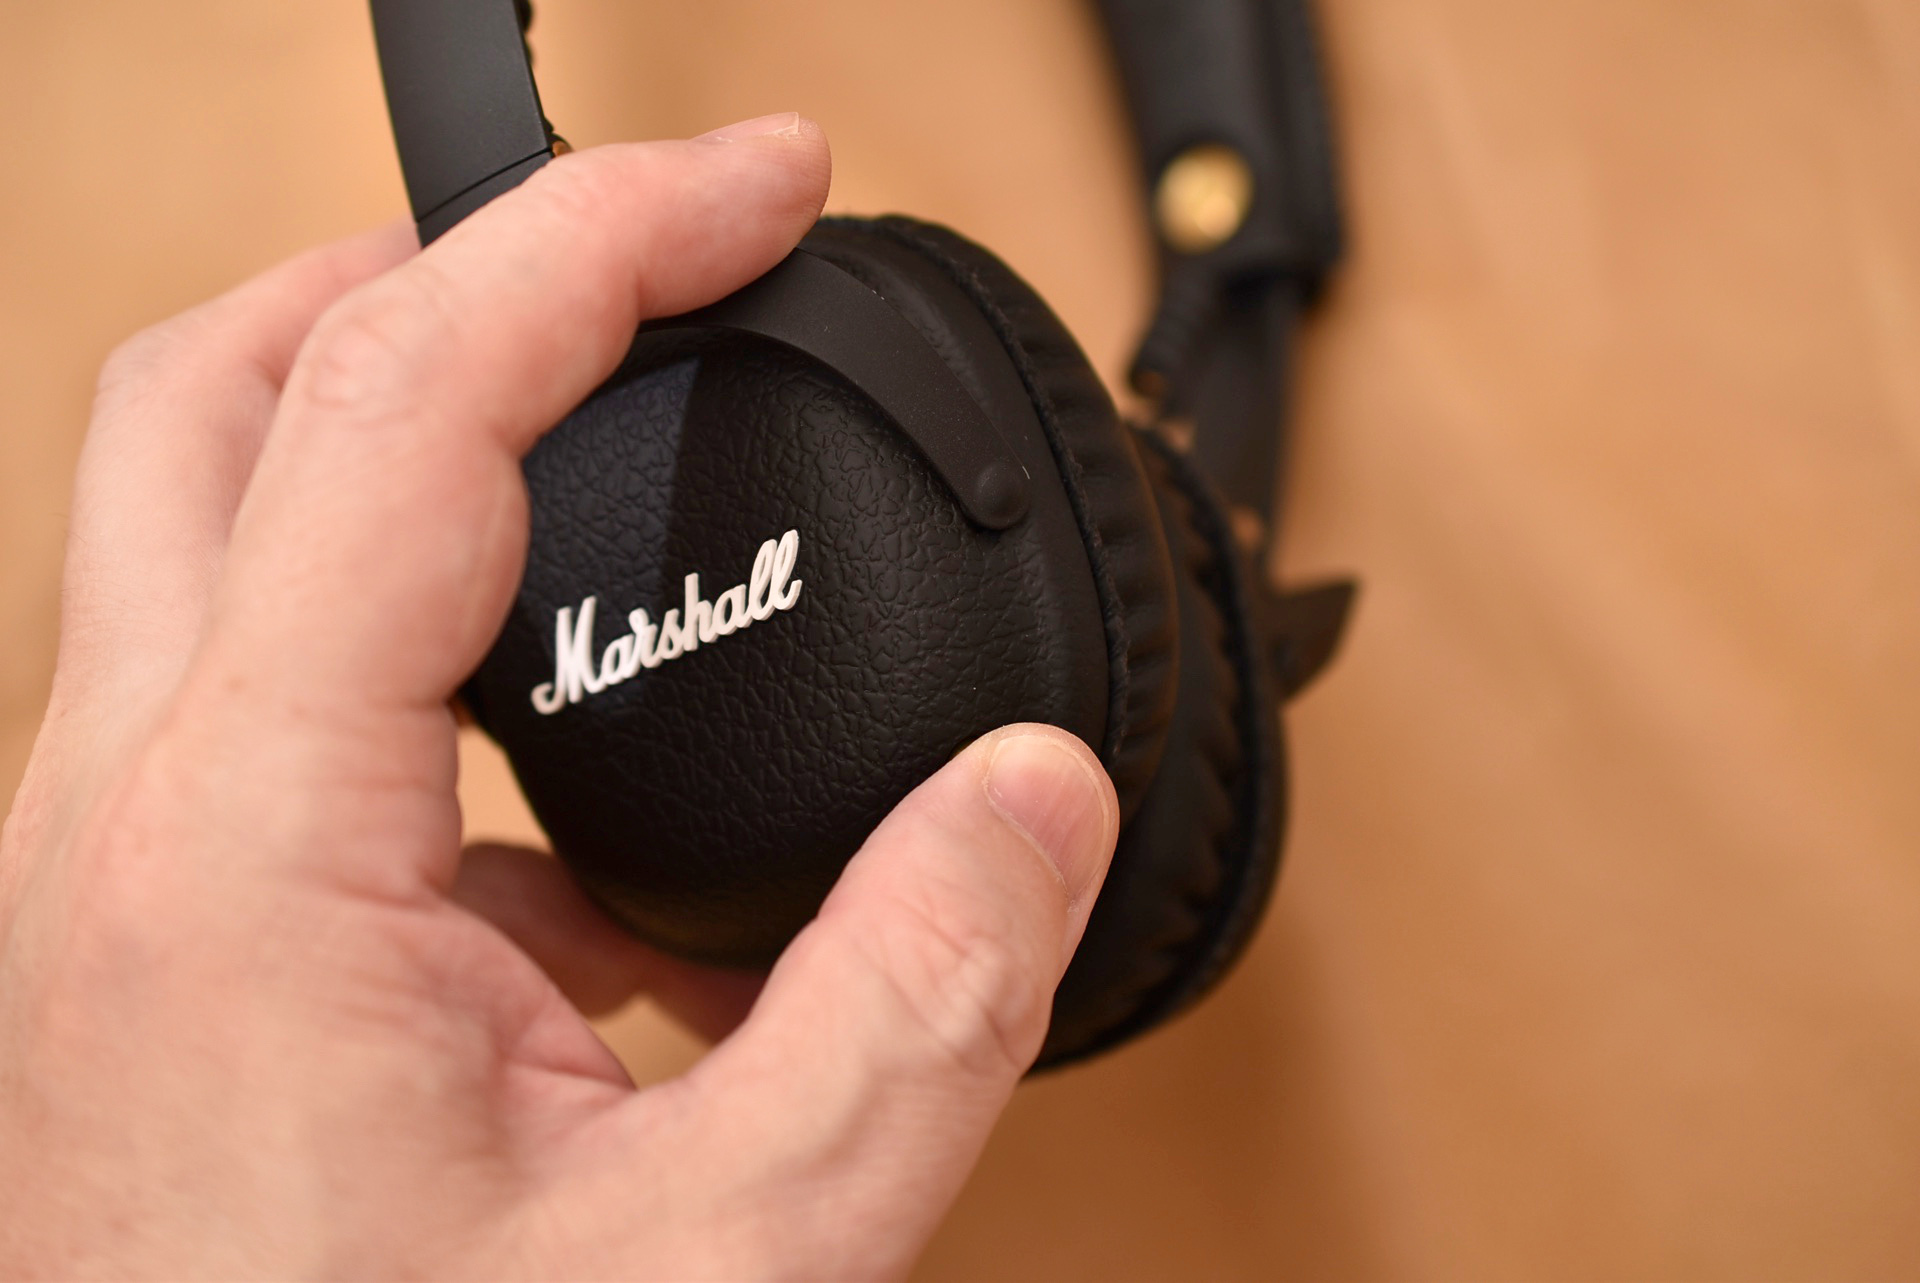 Marshall MID Bluetooth レビュー。マーシャル感満載のヘッドホン 